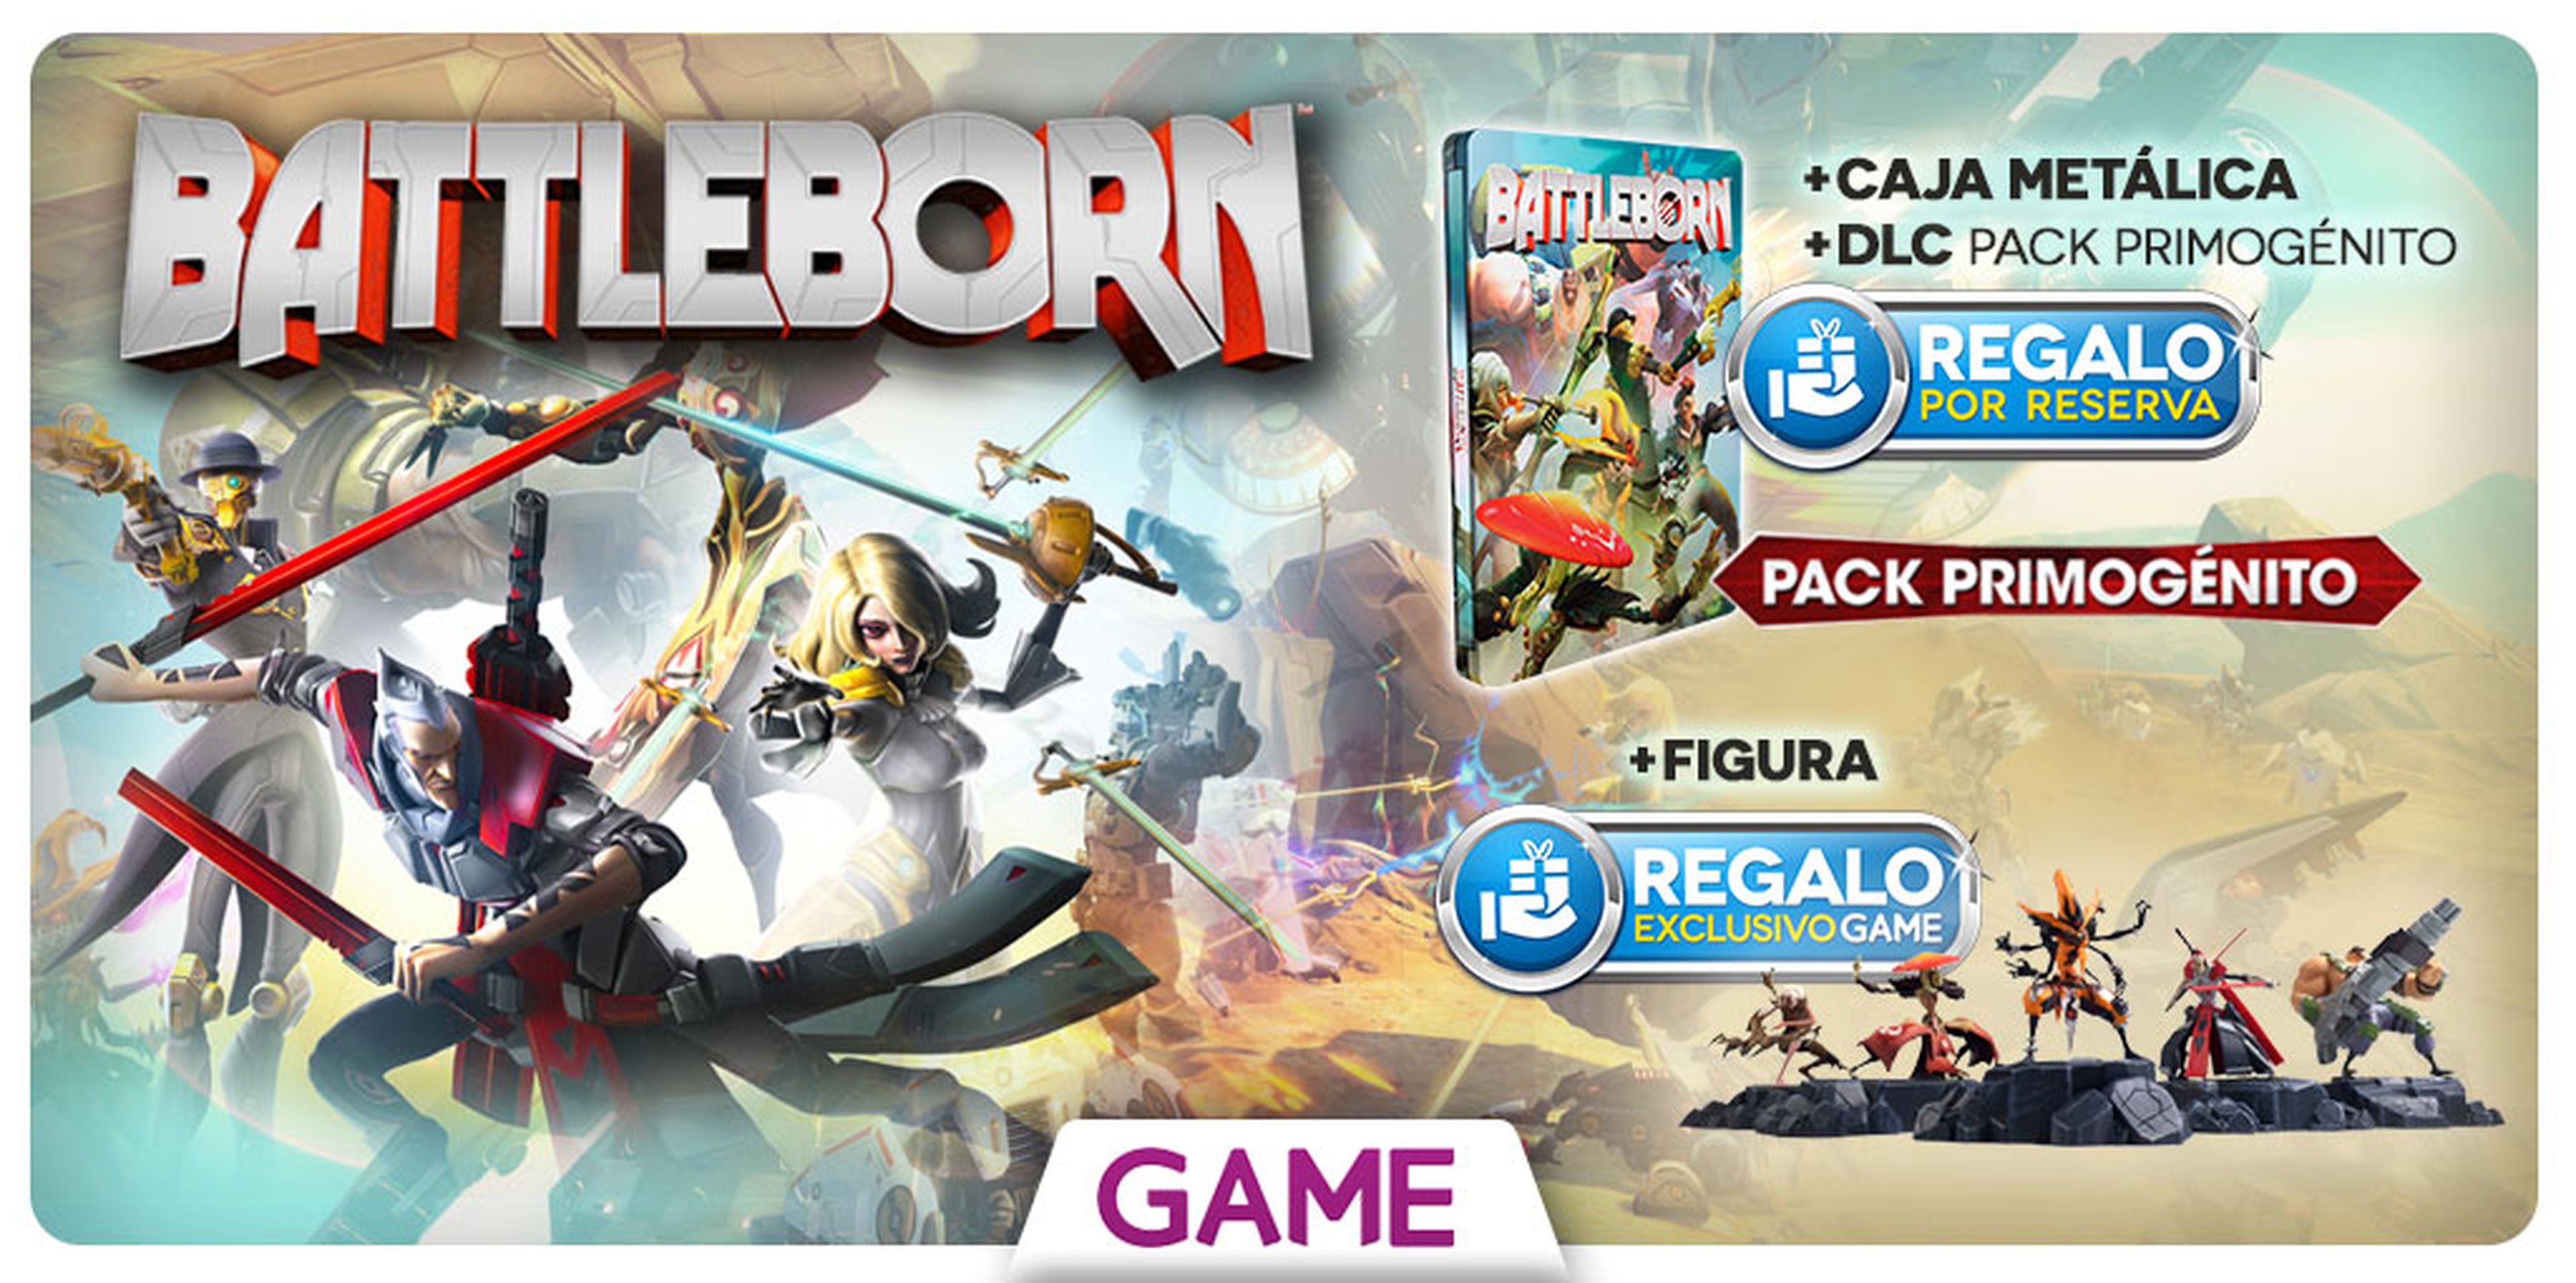 Battleborn, contenido extra por su reserva en GAME